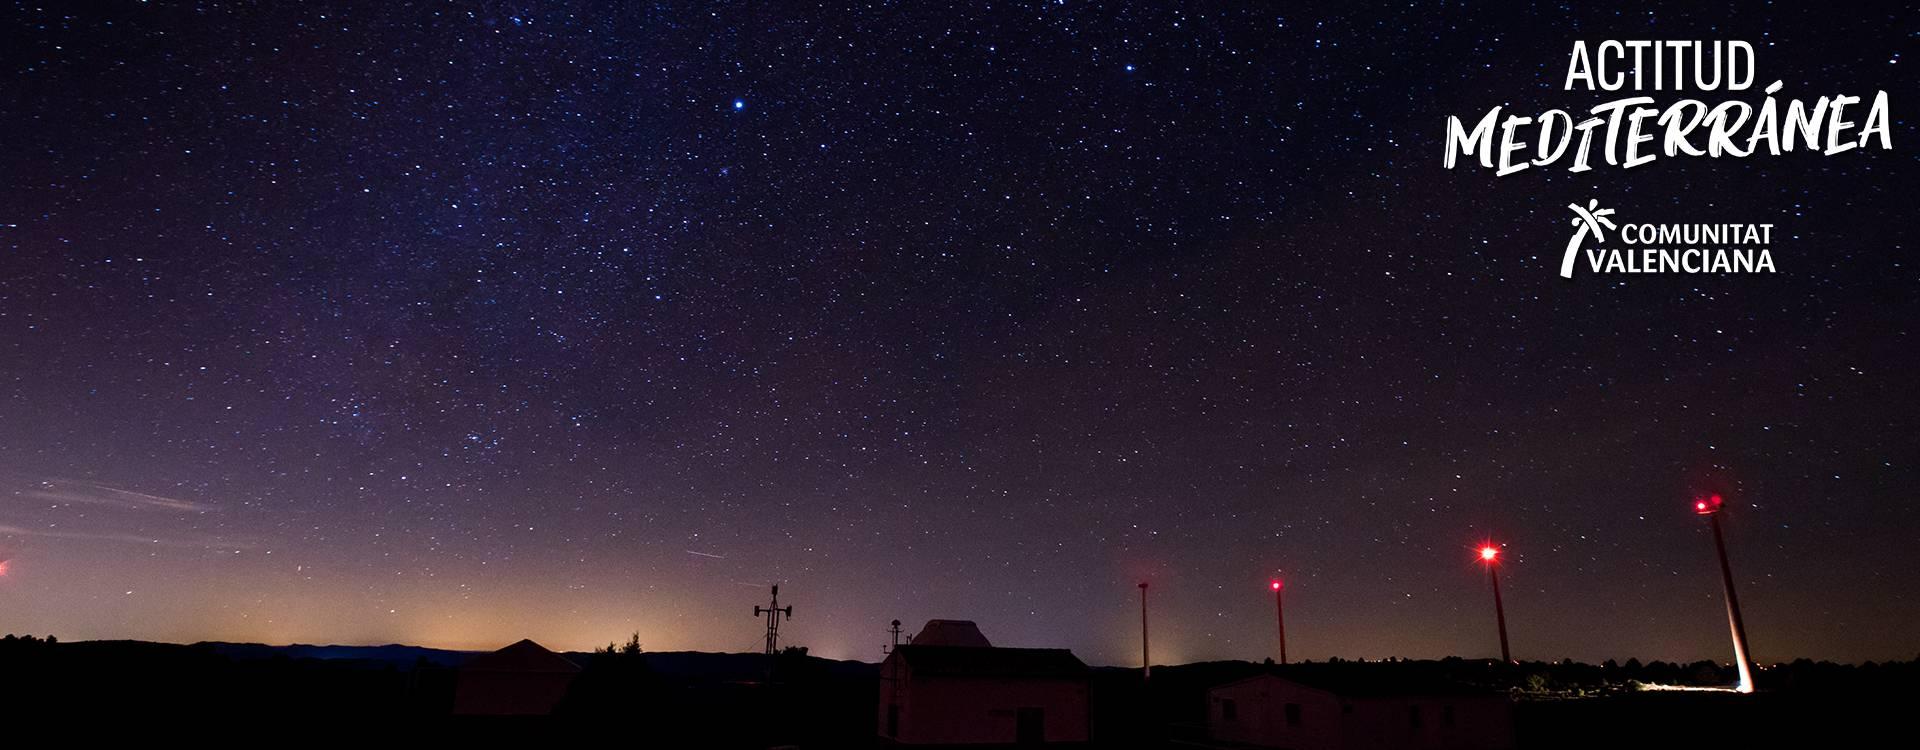 Imatge astroturisme d'una nit estrellada	